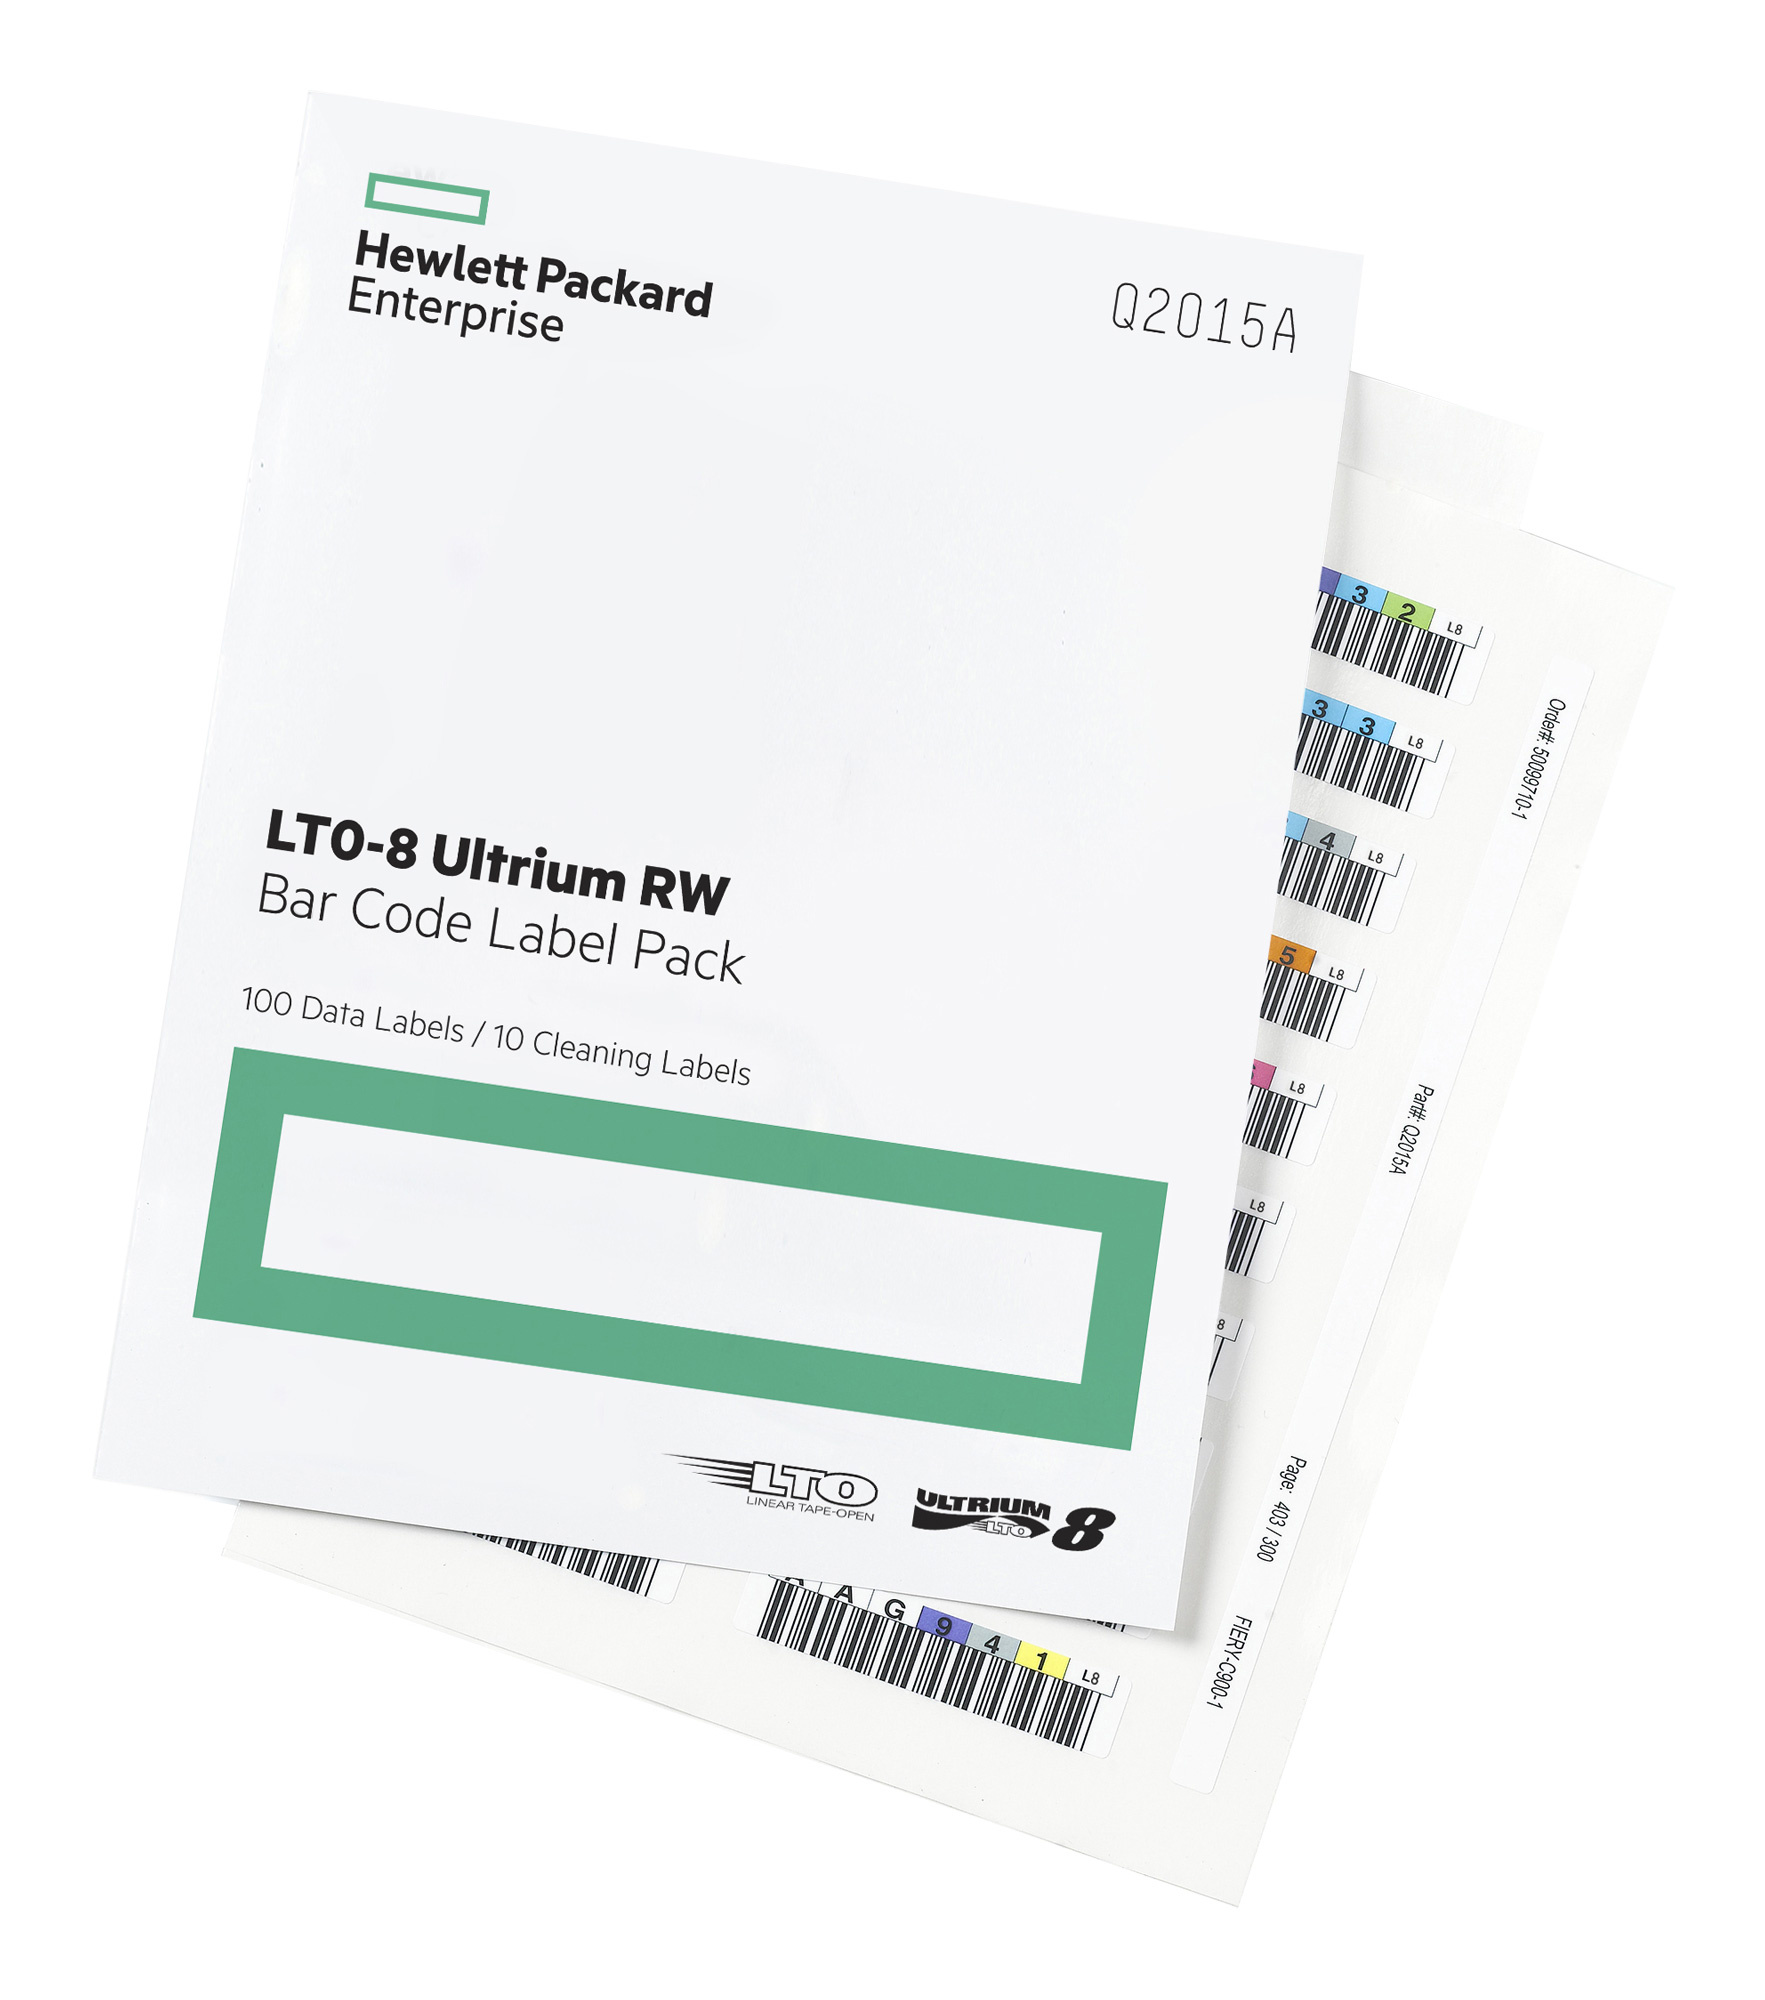 Наклейка HPE Q2015A LTO-8 Ultrium RW Bar Code Label Pack